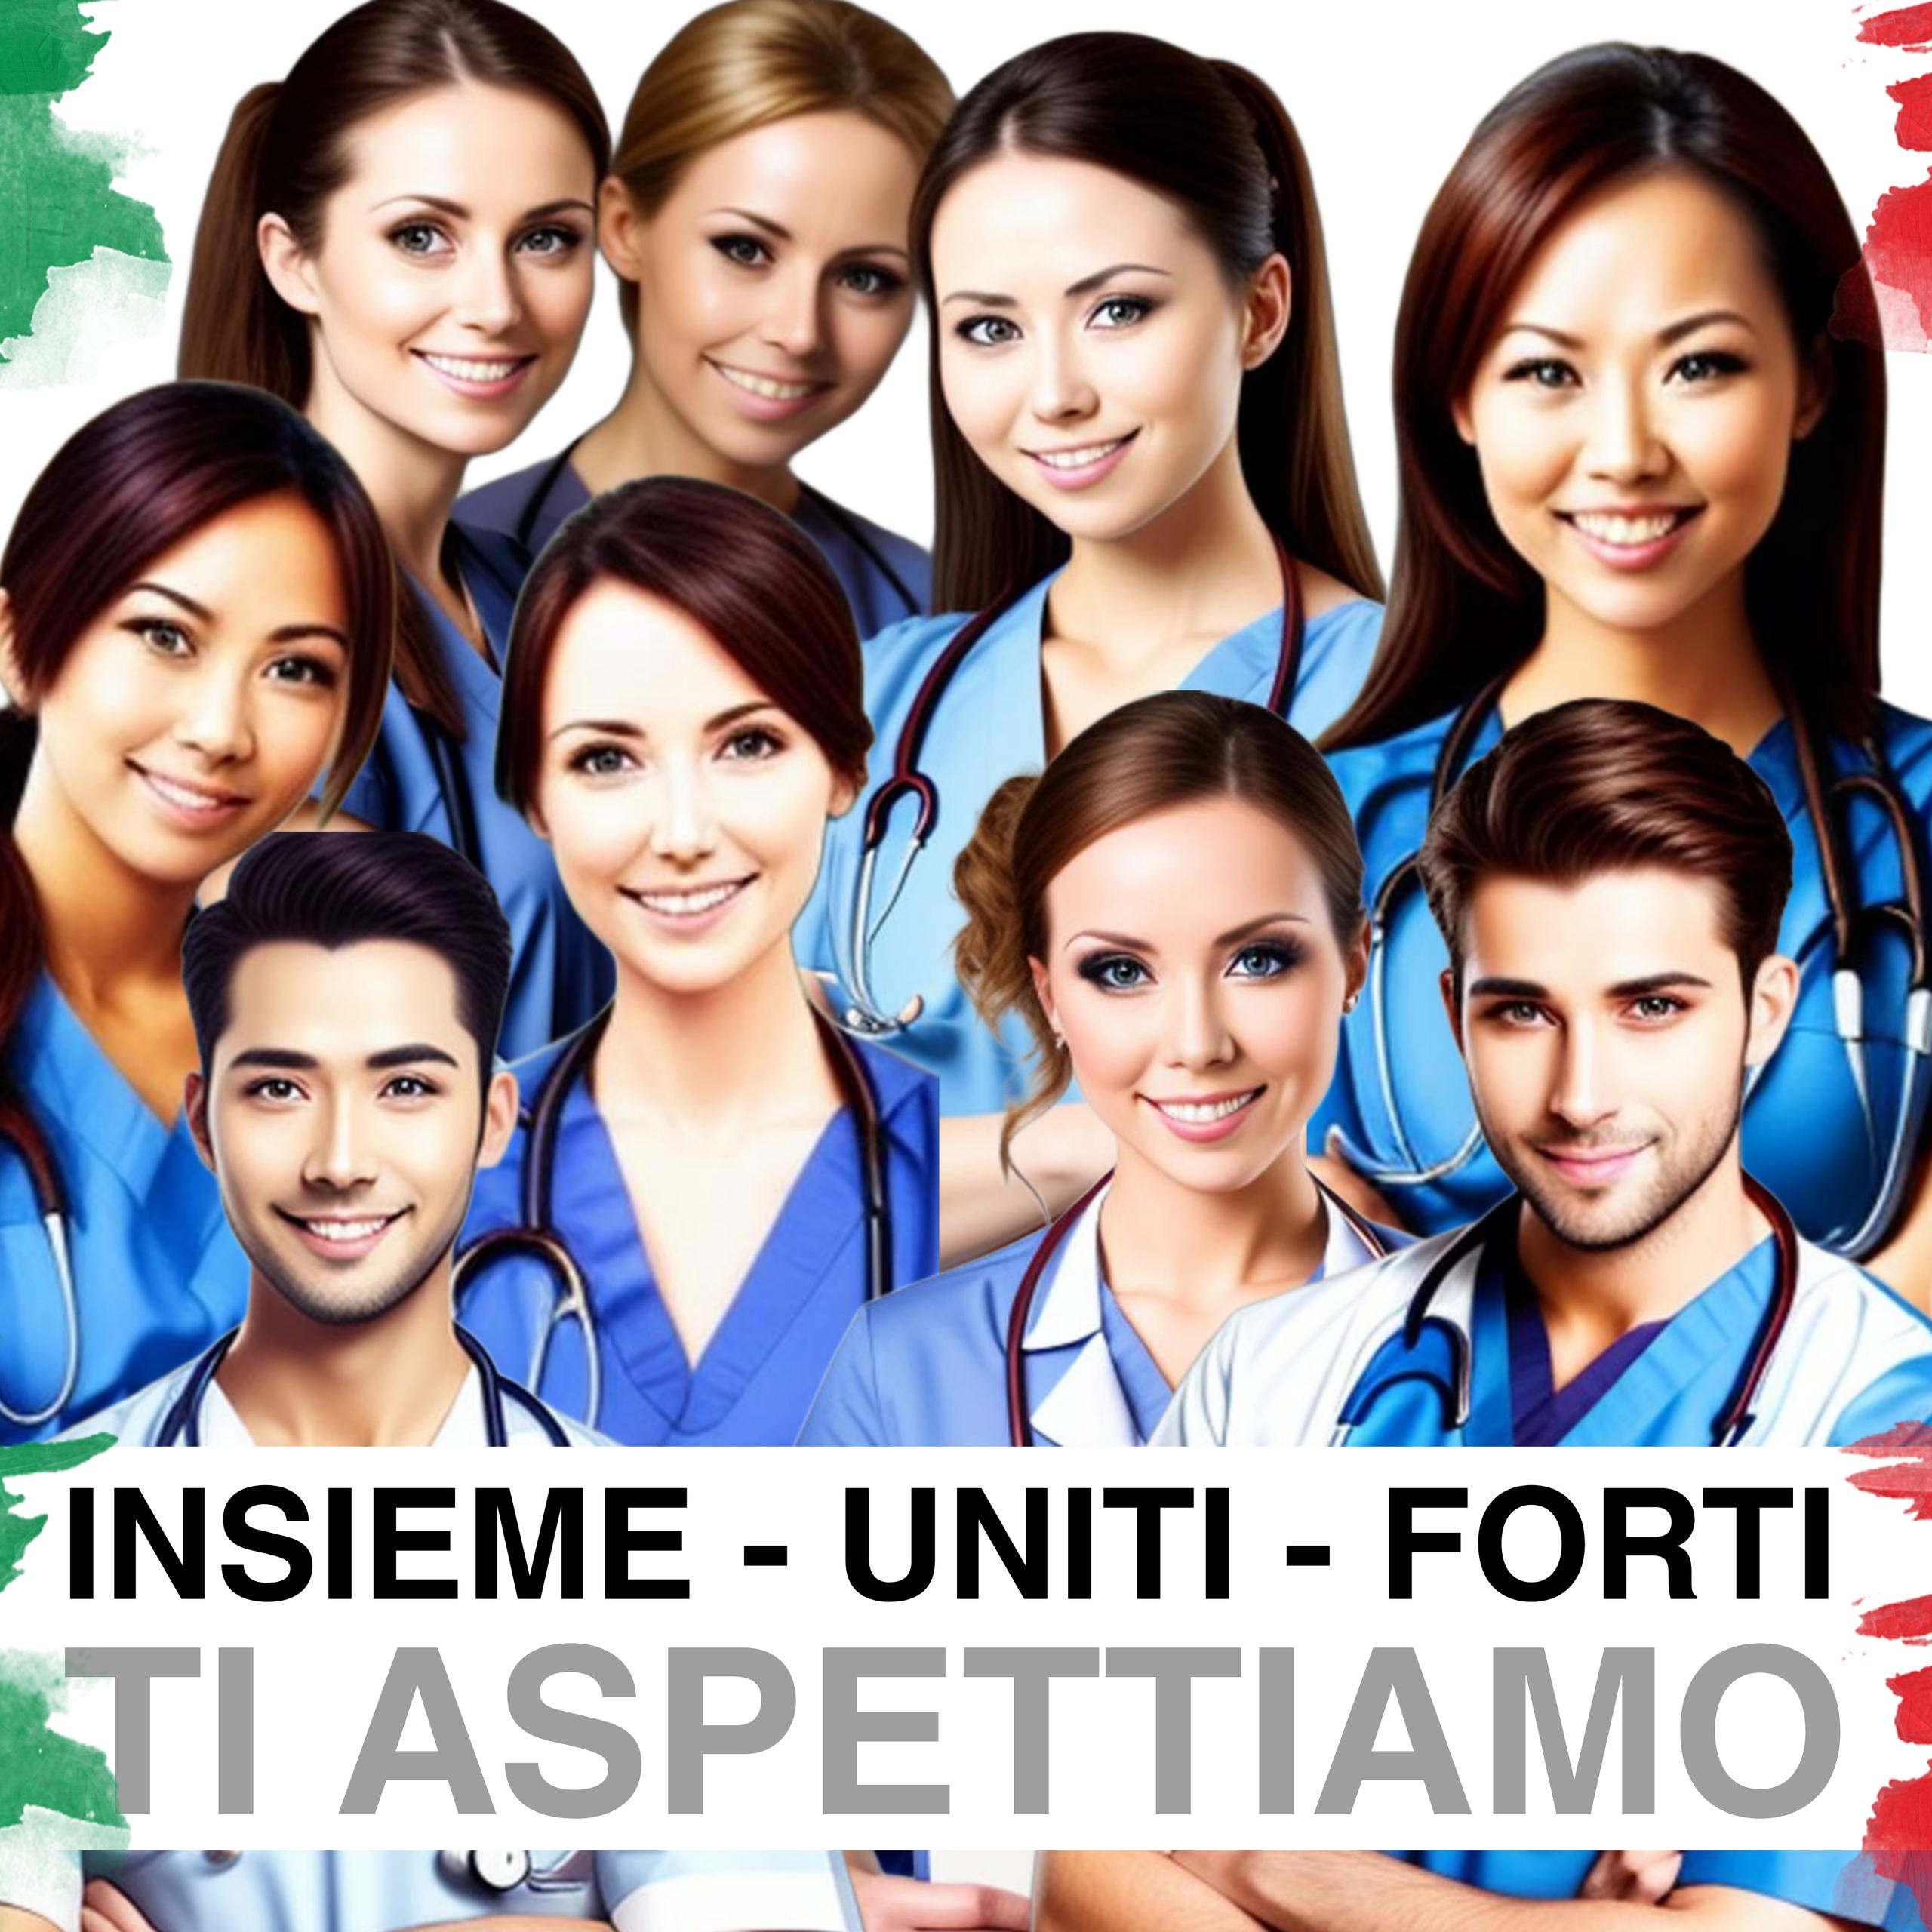 Aumento denunce, povertà assoluta, infermieri in fuga: l'Italia verso il baratro?